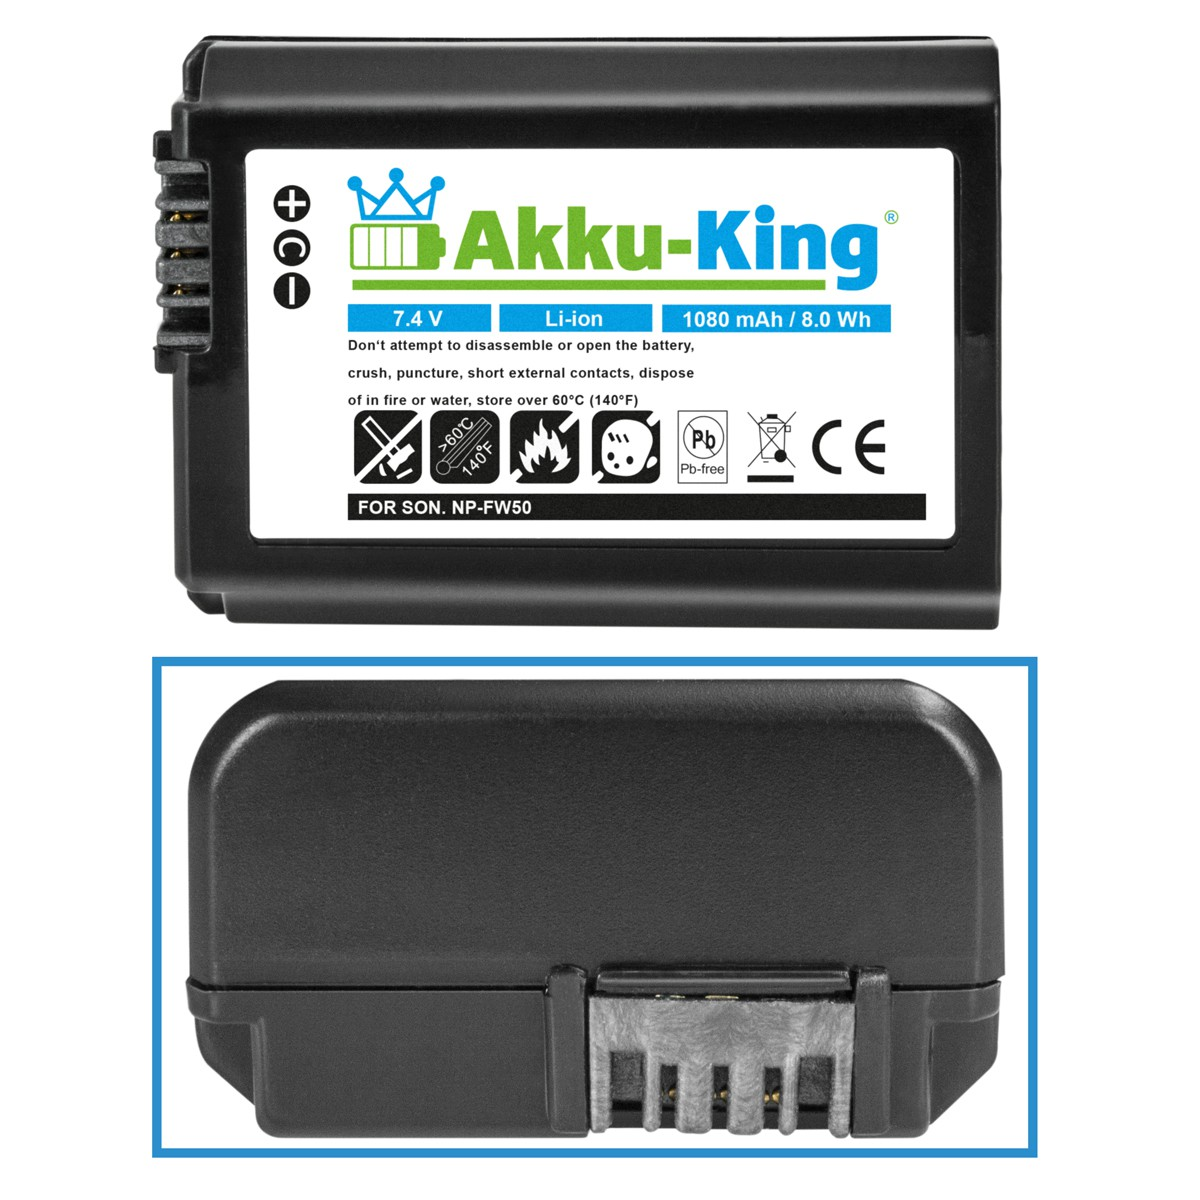 Li-Ion NP-FW50 Akku kompatibel Volt, 7.4 Sony mit Kamera-Akku, AKKU-KING 1080mAh